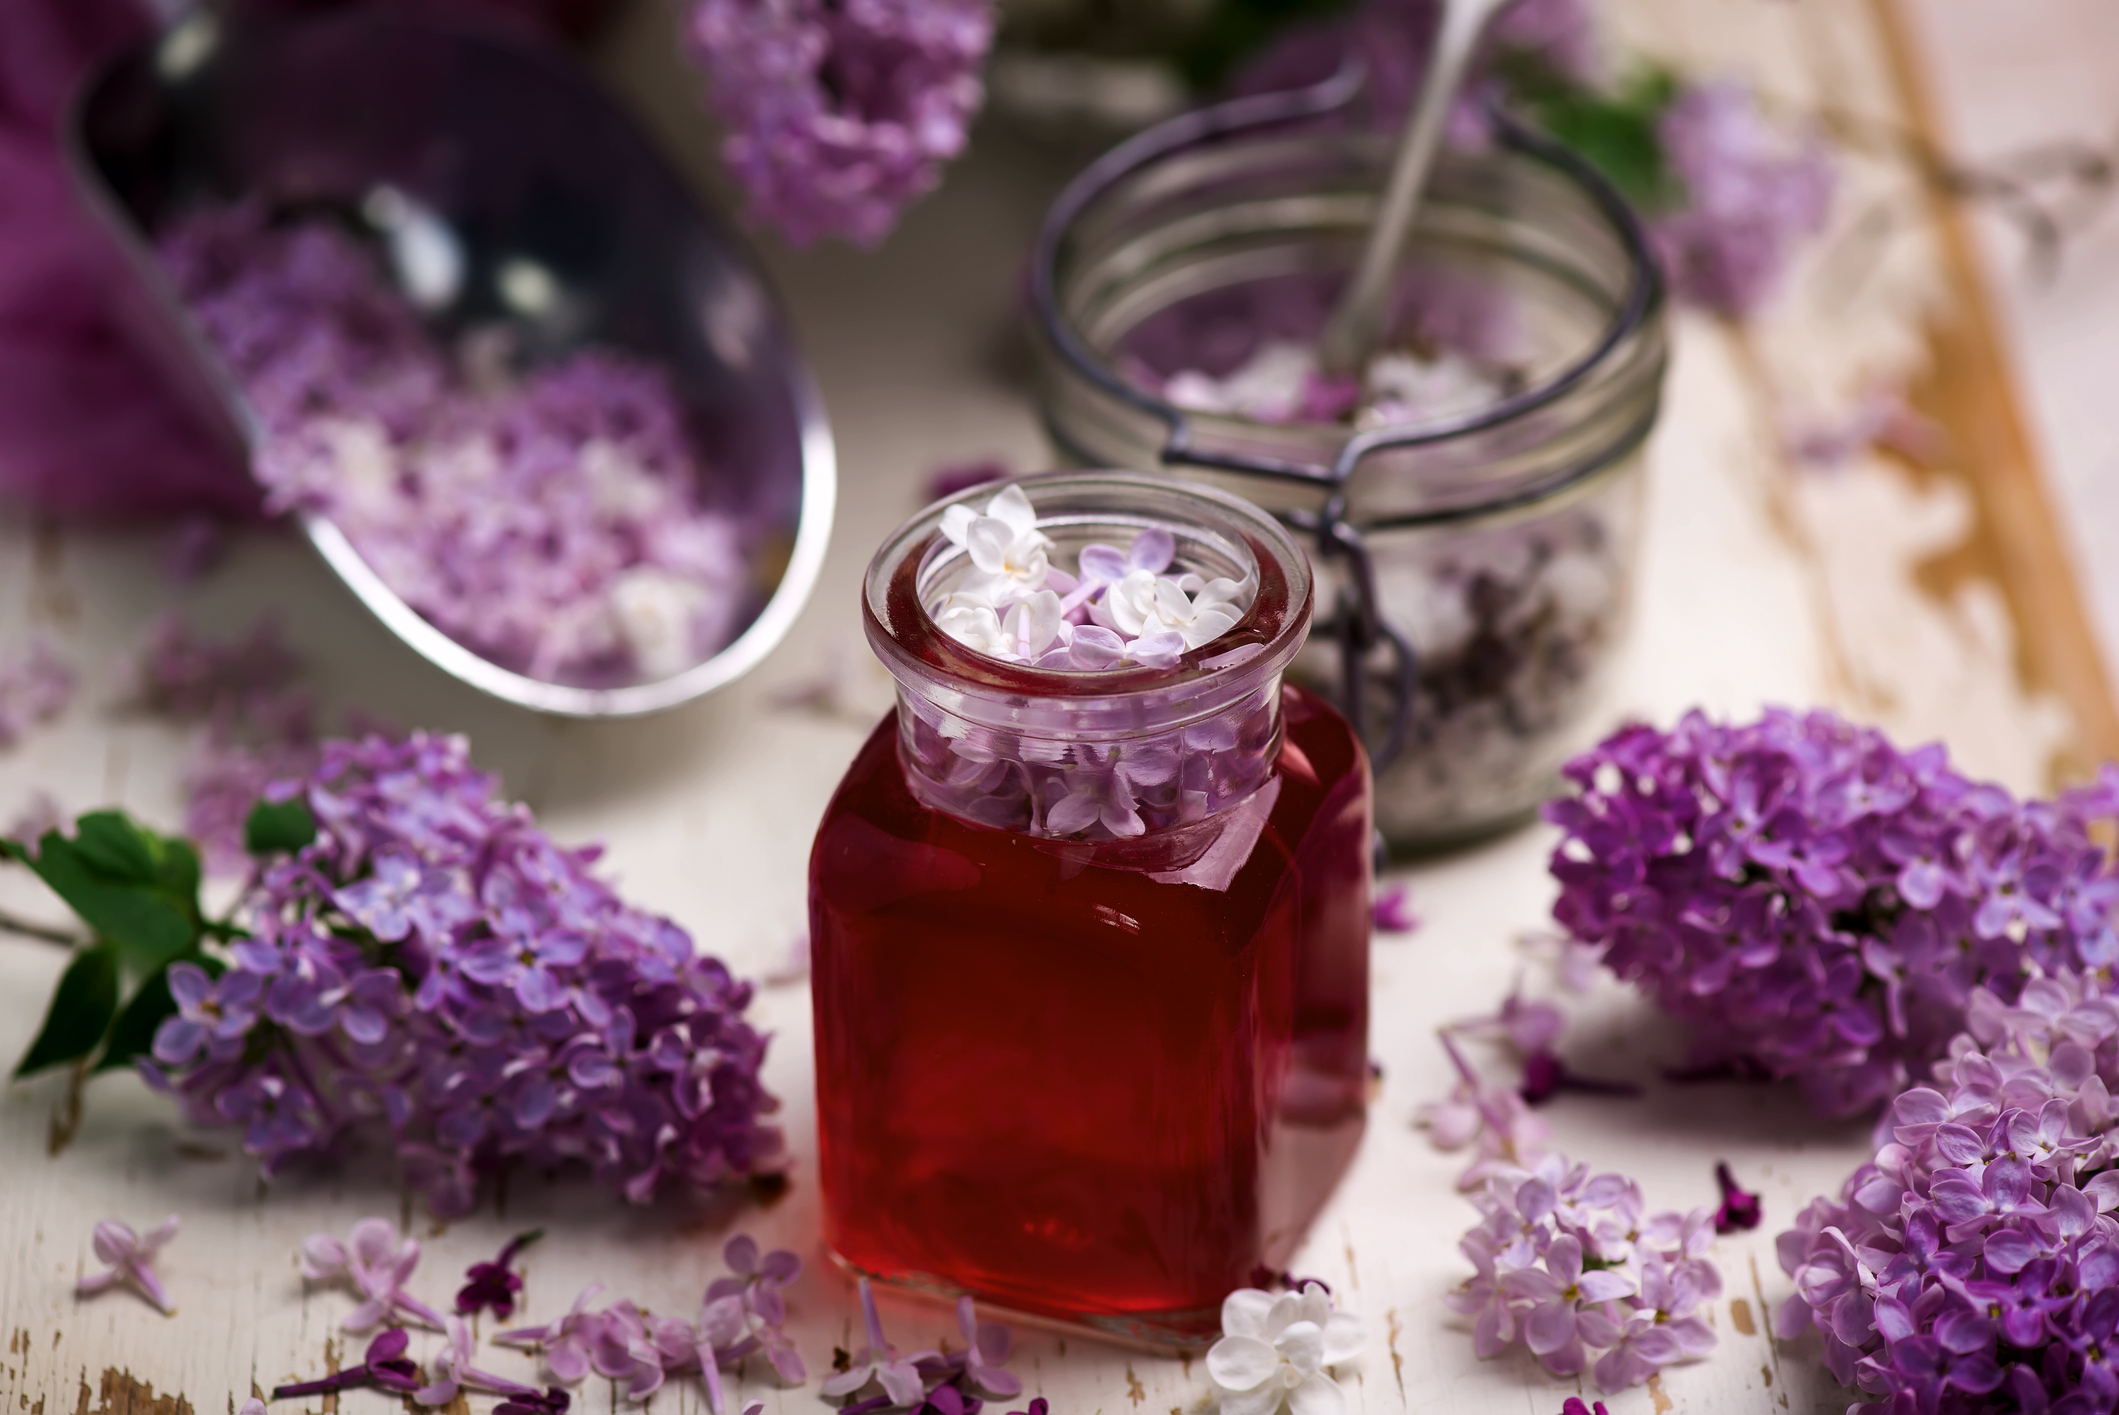 C’est la saison du lilas, profitez-en pour faire un délicieux sirop de lilas en suivant notre recette facile et rapide. Copyright (c) Zoryana Ivchenko/Istock.